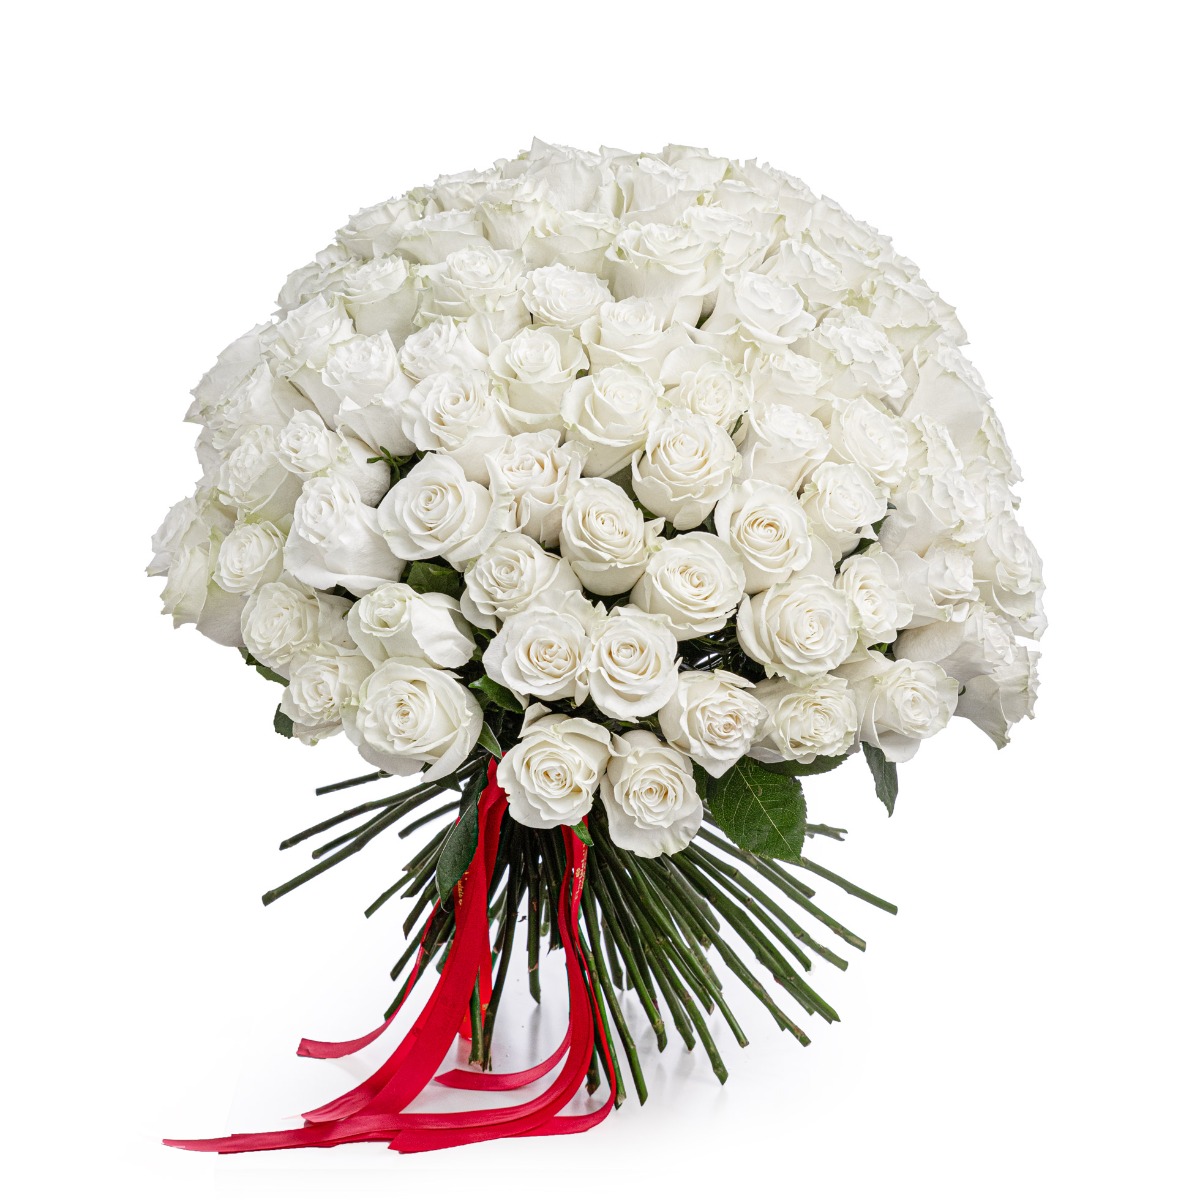 Buchet 101 trandafiri albi